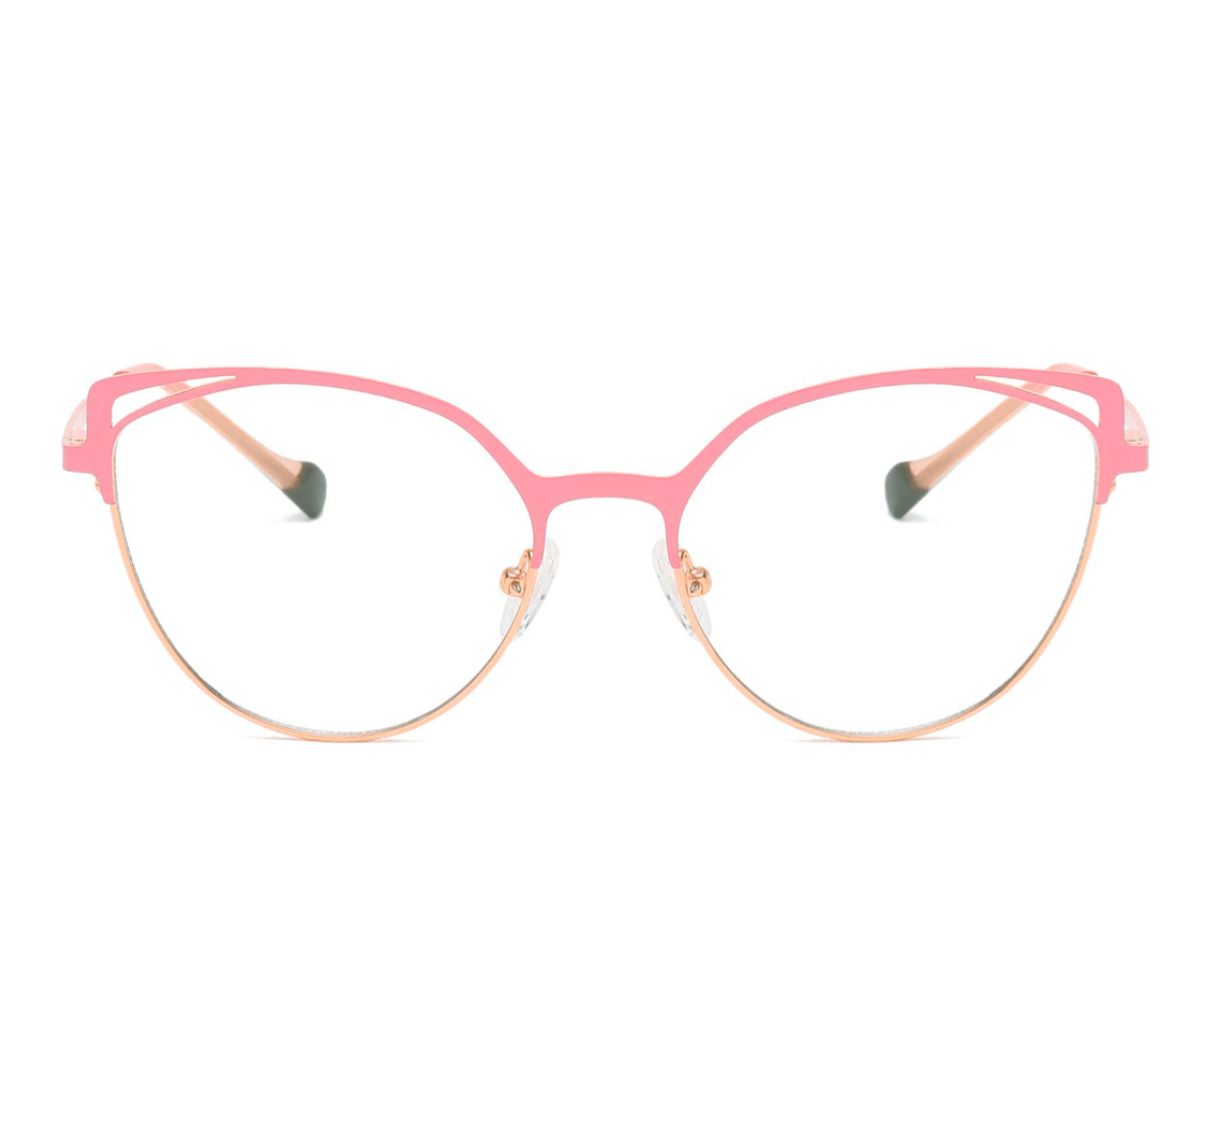 bulk cat eye glasses wholesale for women, factory eyewear, glasses supplier, eyeglasses wholesale China